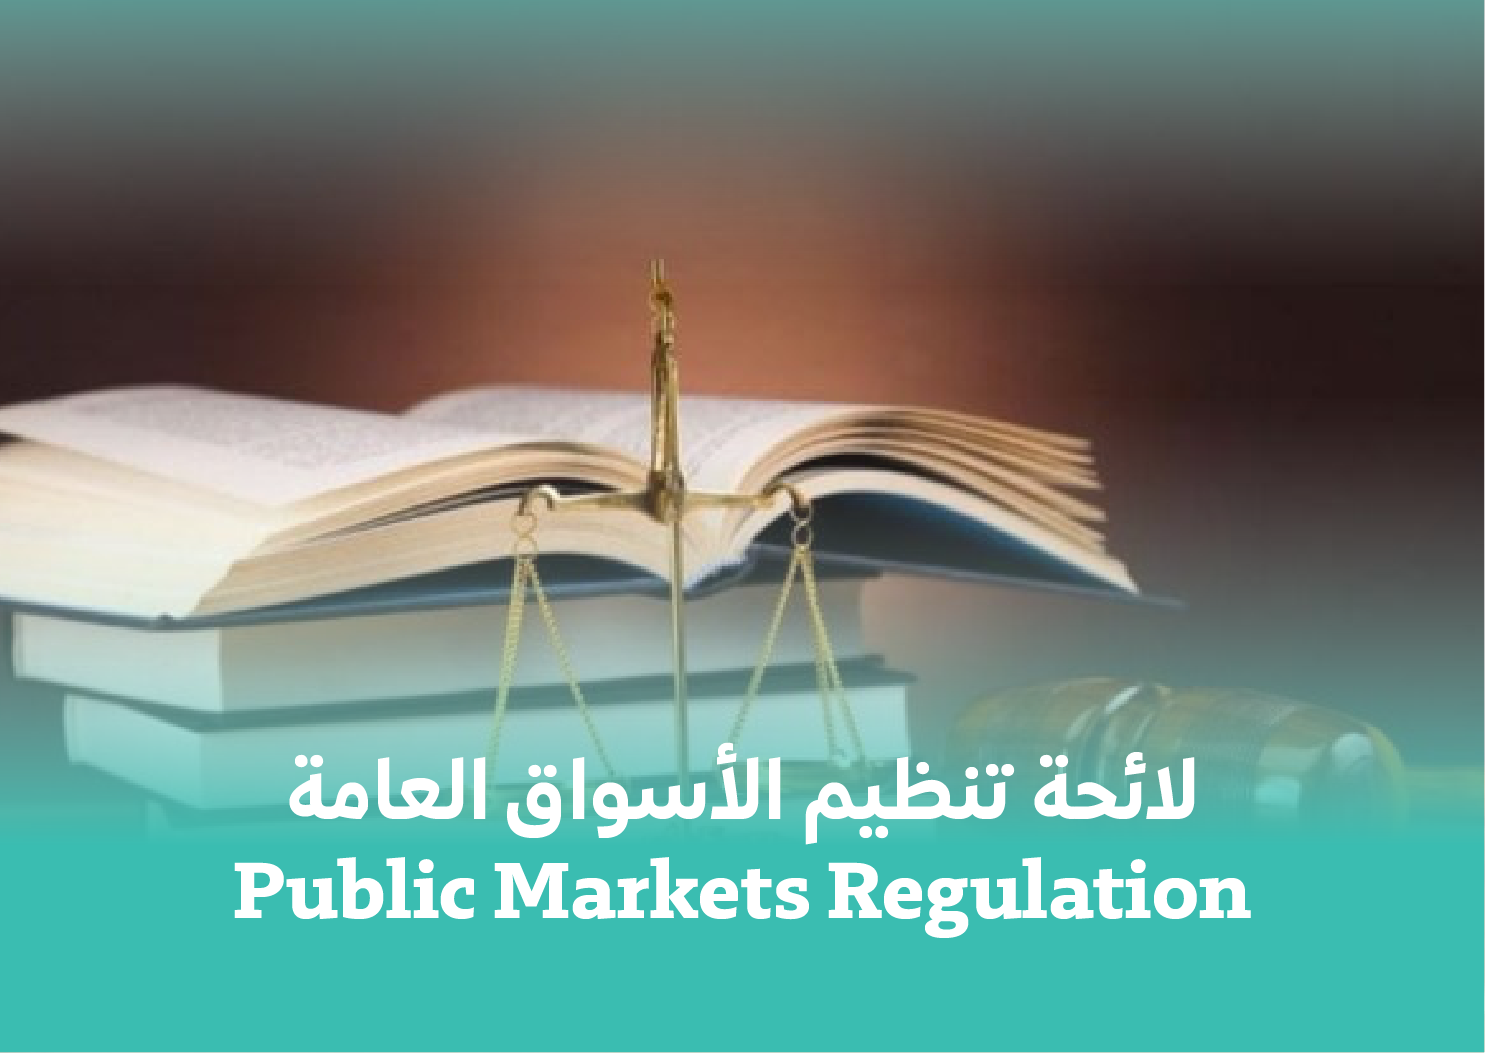 لائحة تنظيم الأسواق العامة